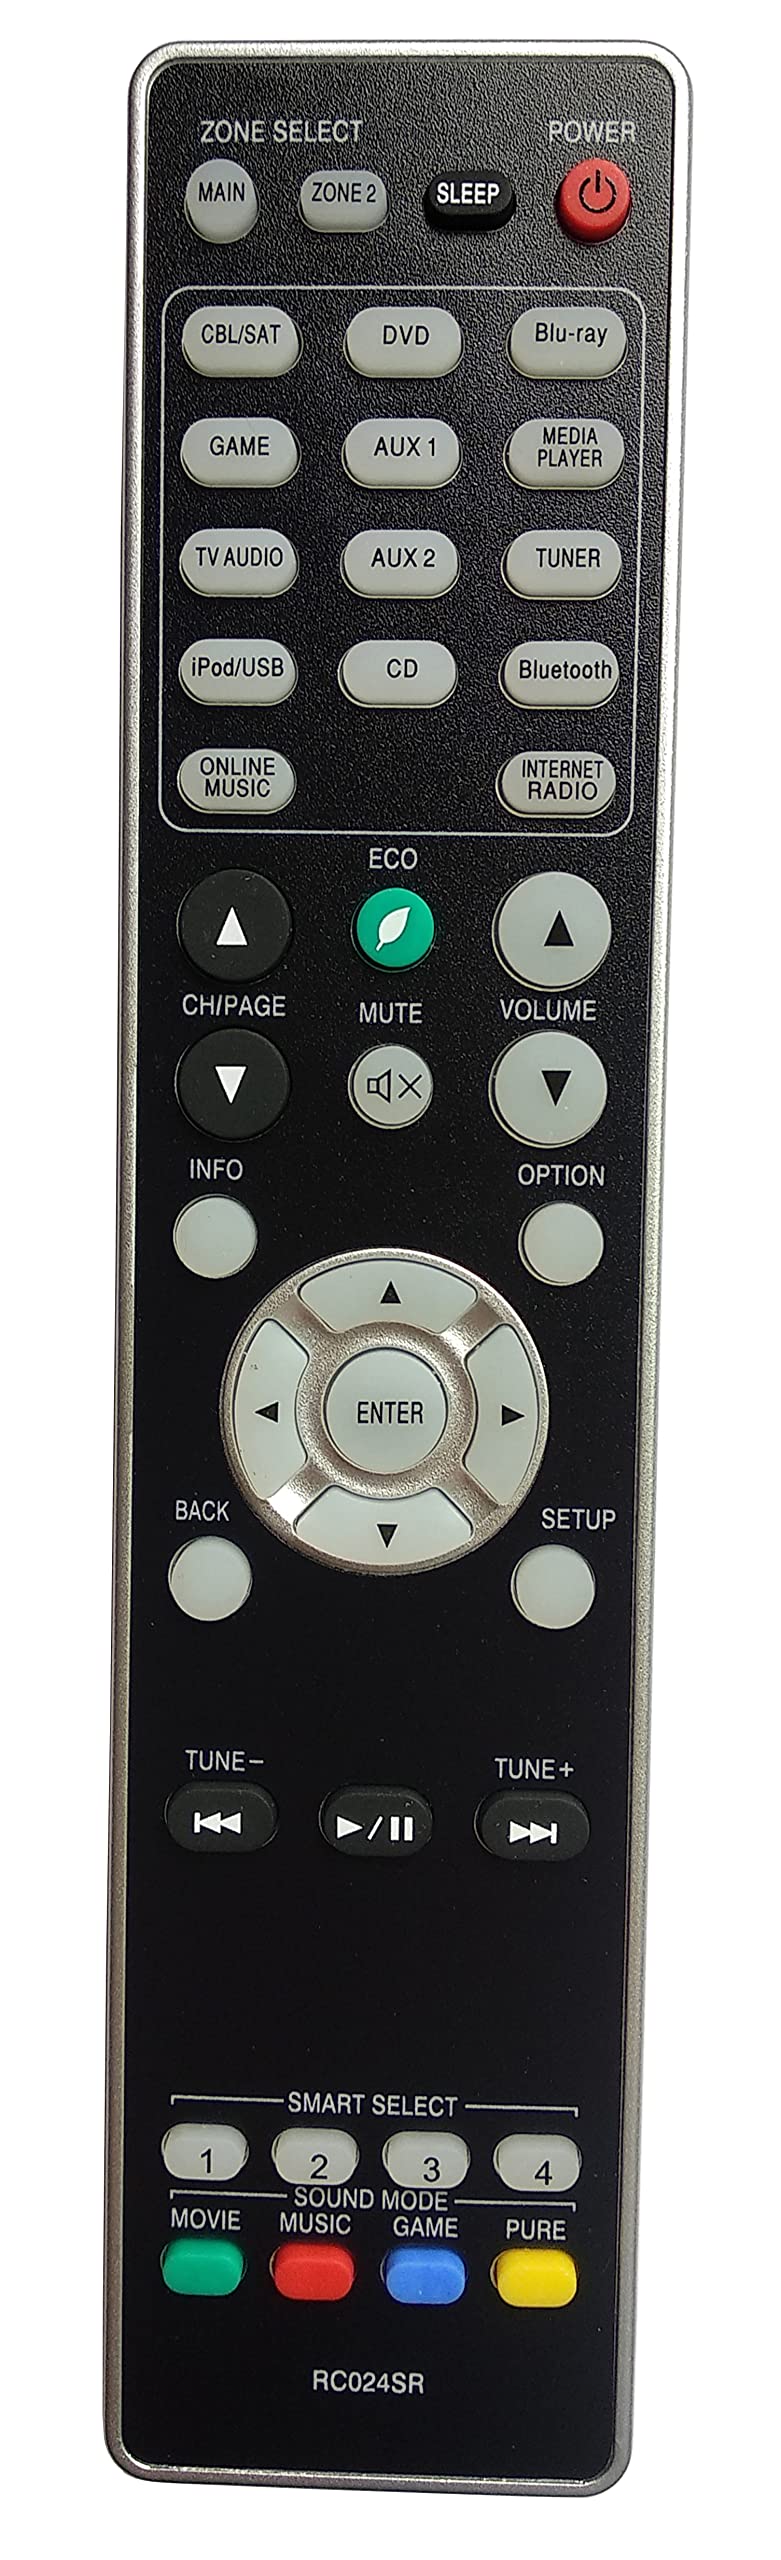  [AUSTRALIA] - Gorilla babo Universal Remote Compatible for MARANTZ RC024SR NR1605 NR1606 NR1607 SR5009 SR5010 SR5011 Audio/Video Receiver Remote Control